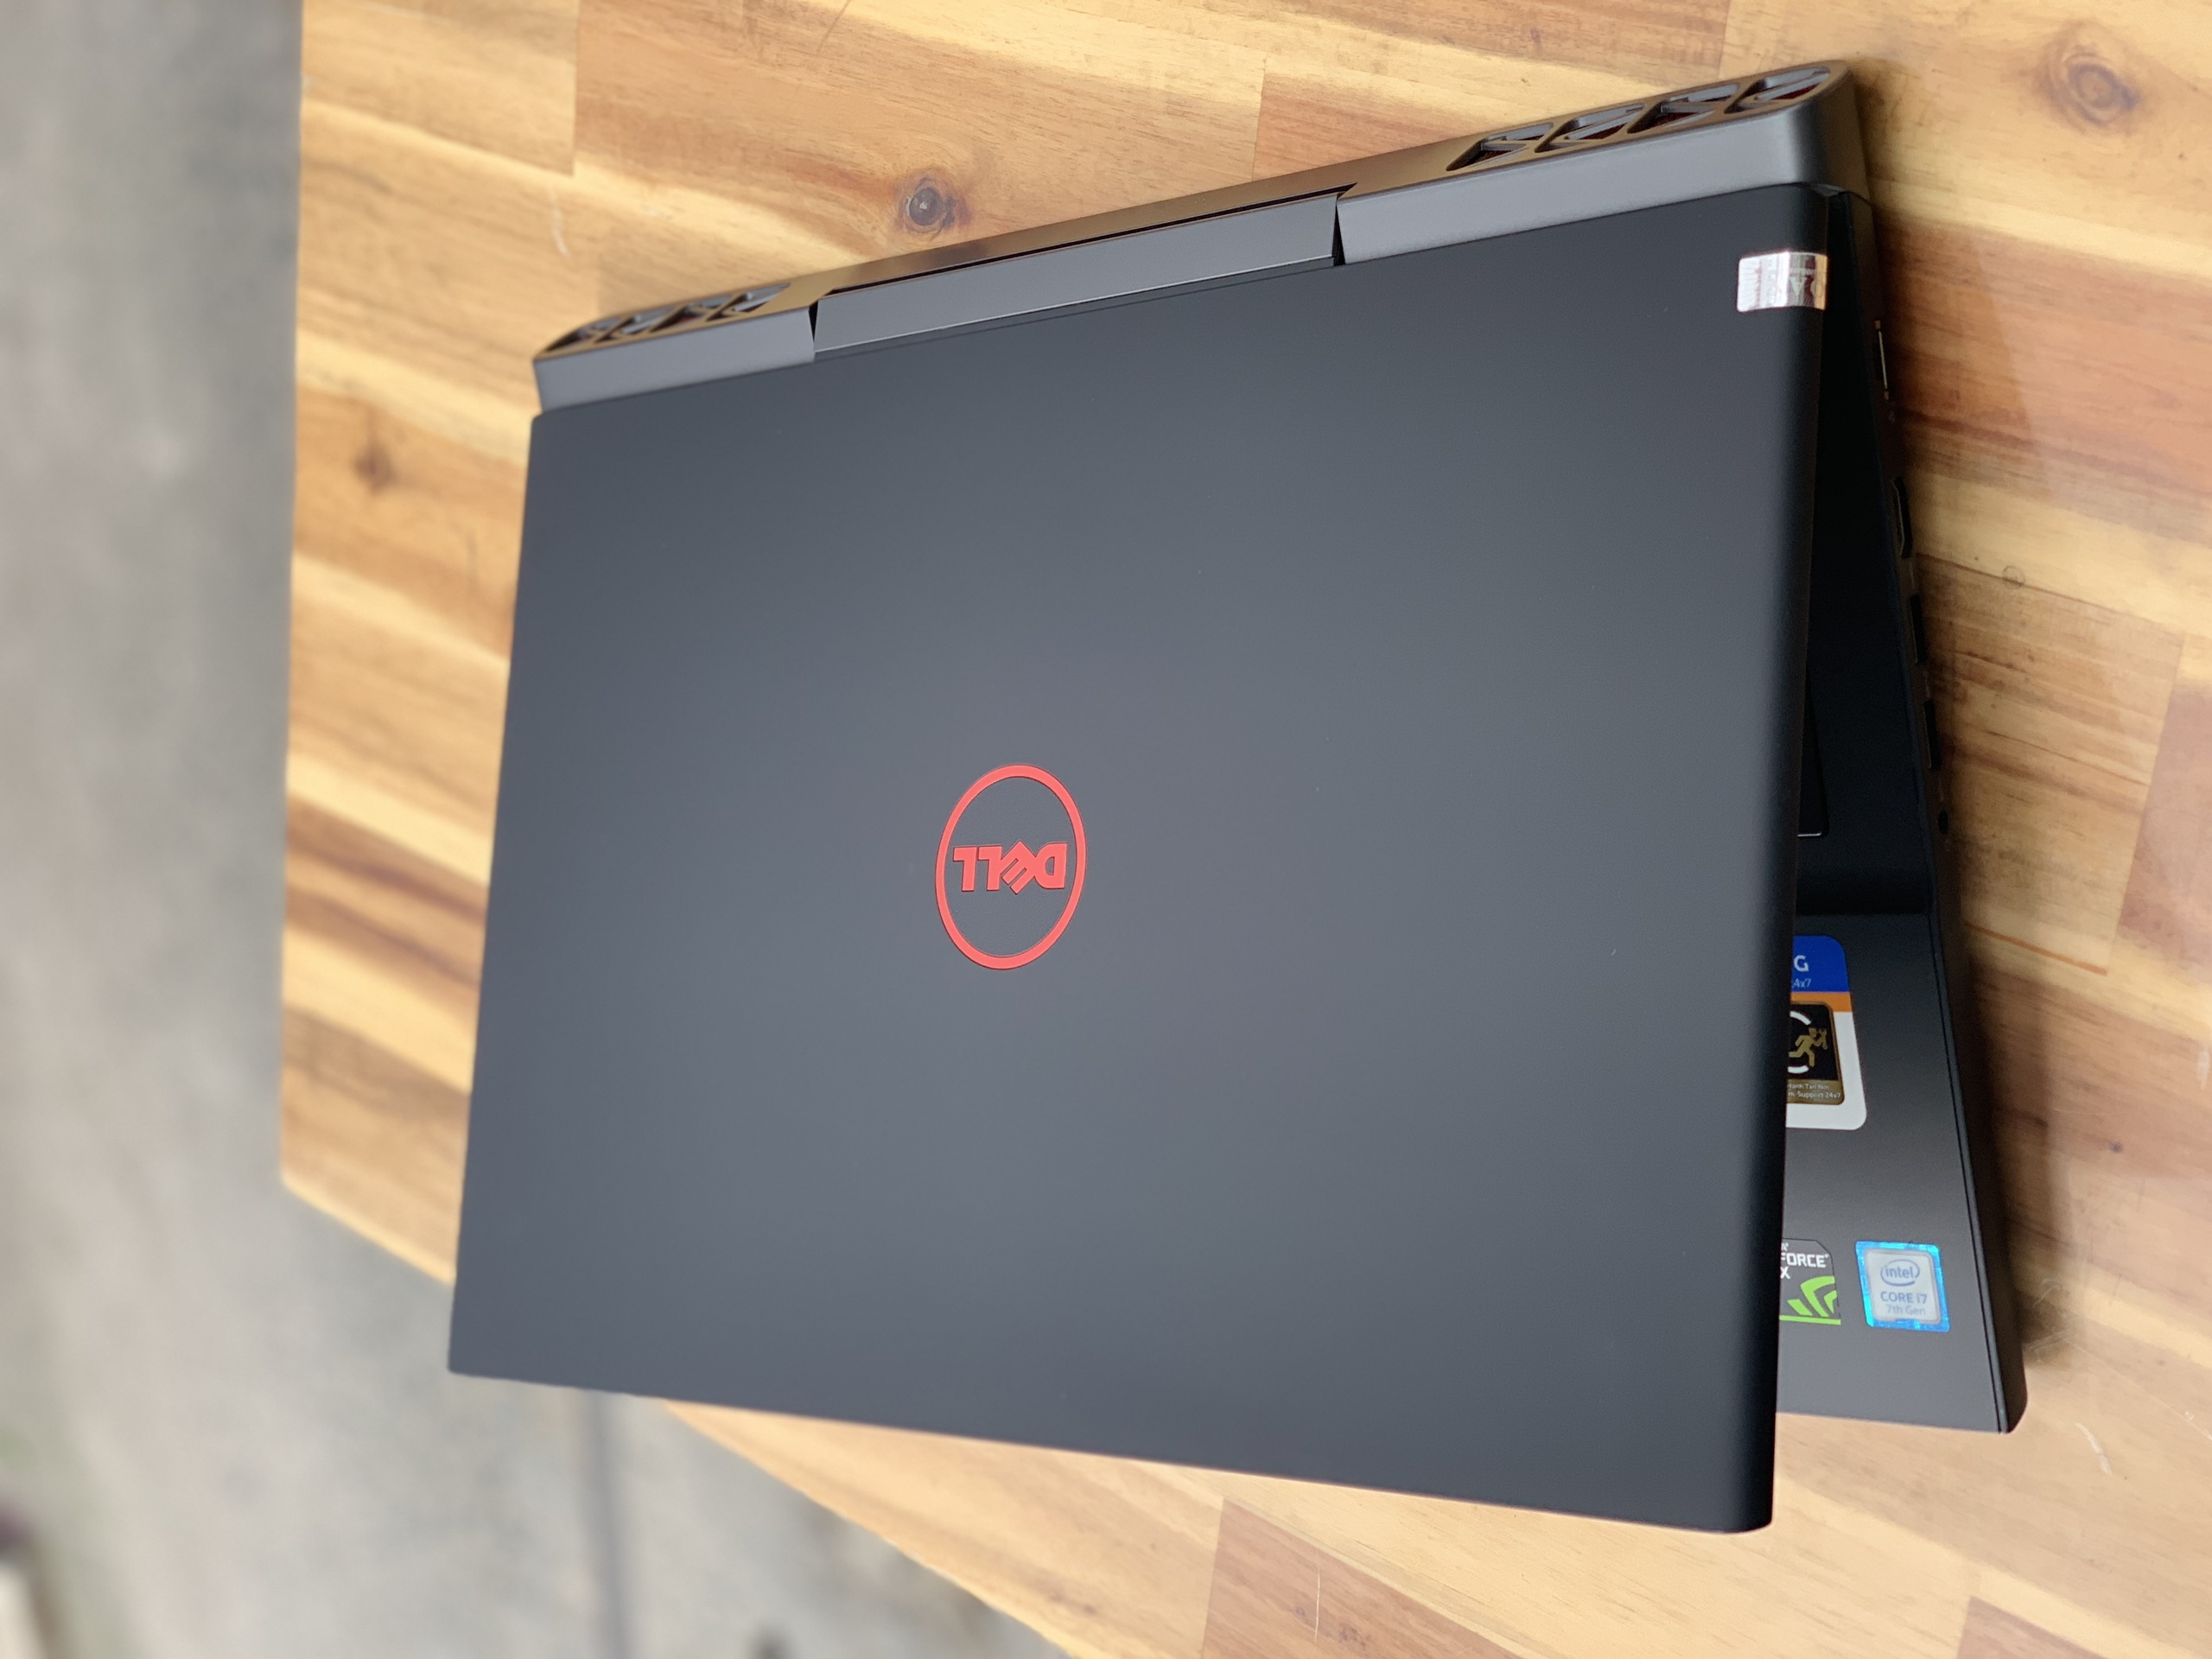 Laptop Dell Gaming 7566, i7 6700HQ 8G SSD128+500G Vga GTX960M 4G FULL HD Đèn phím Đẹp zin 100% Giá rẻ2